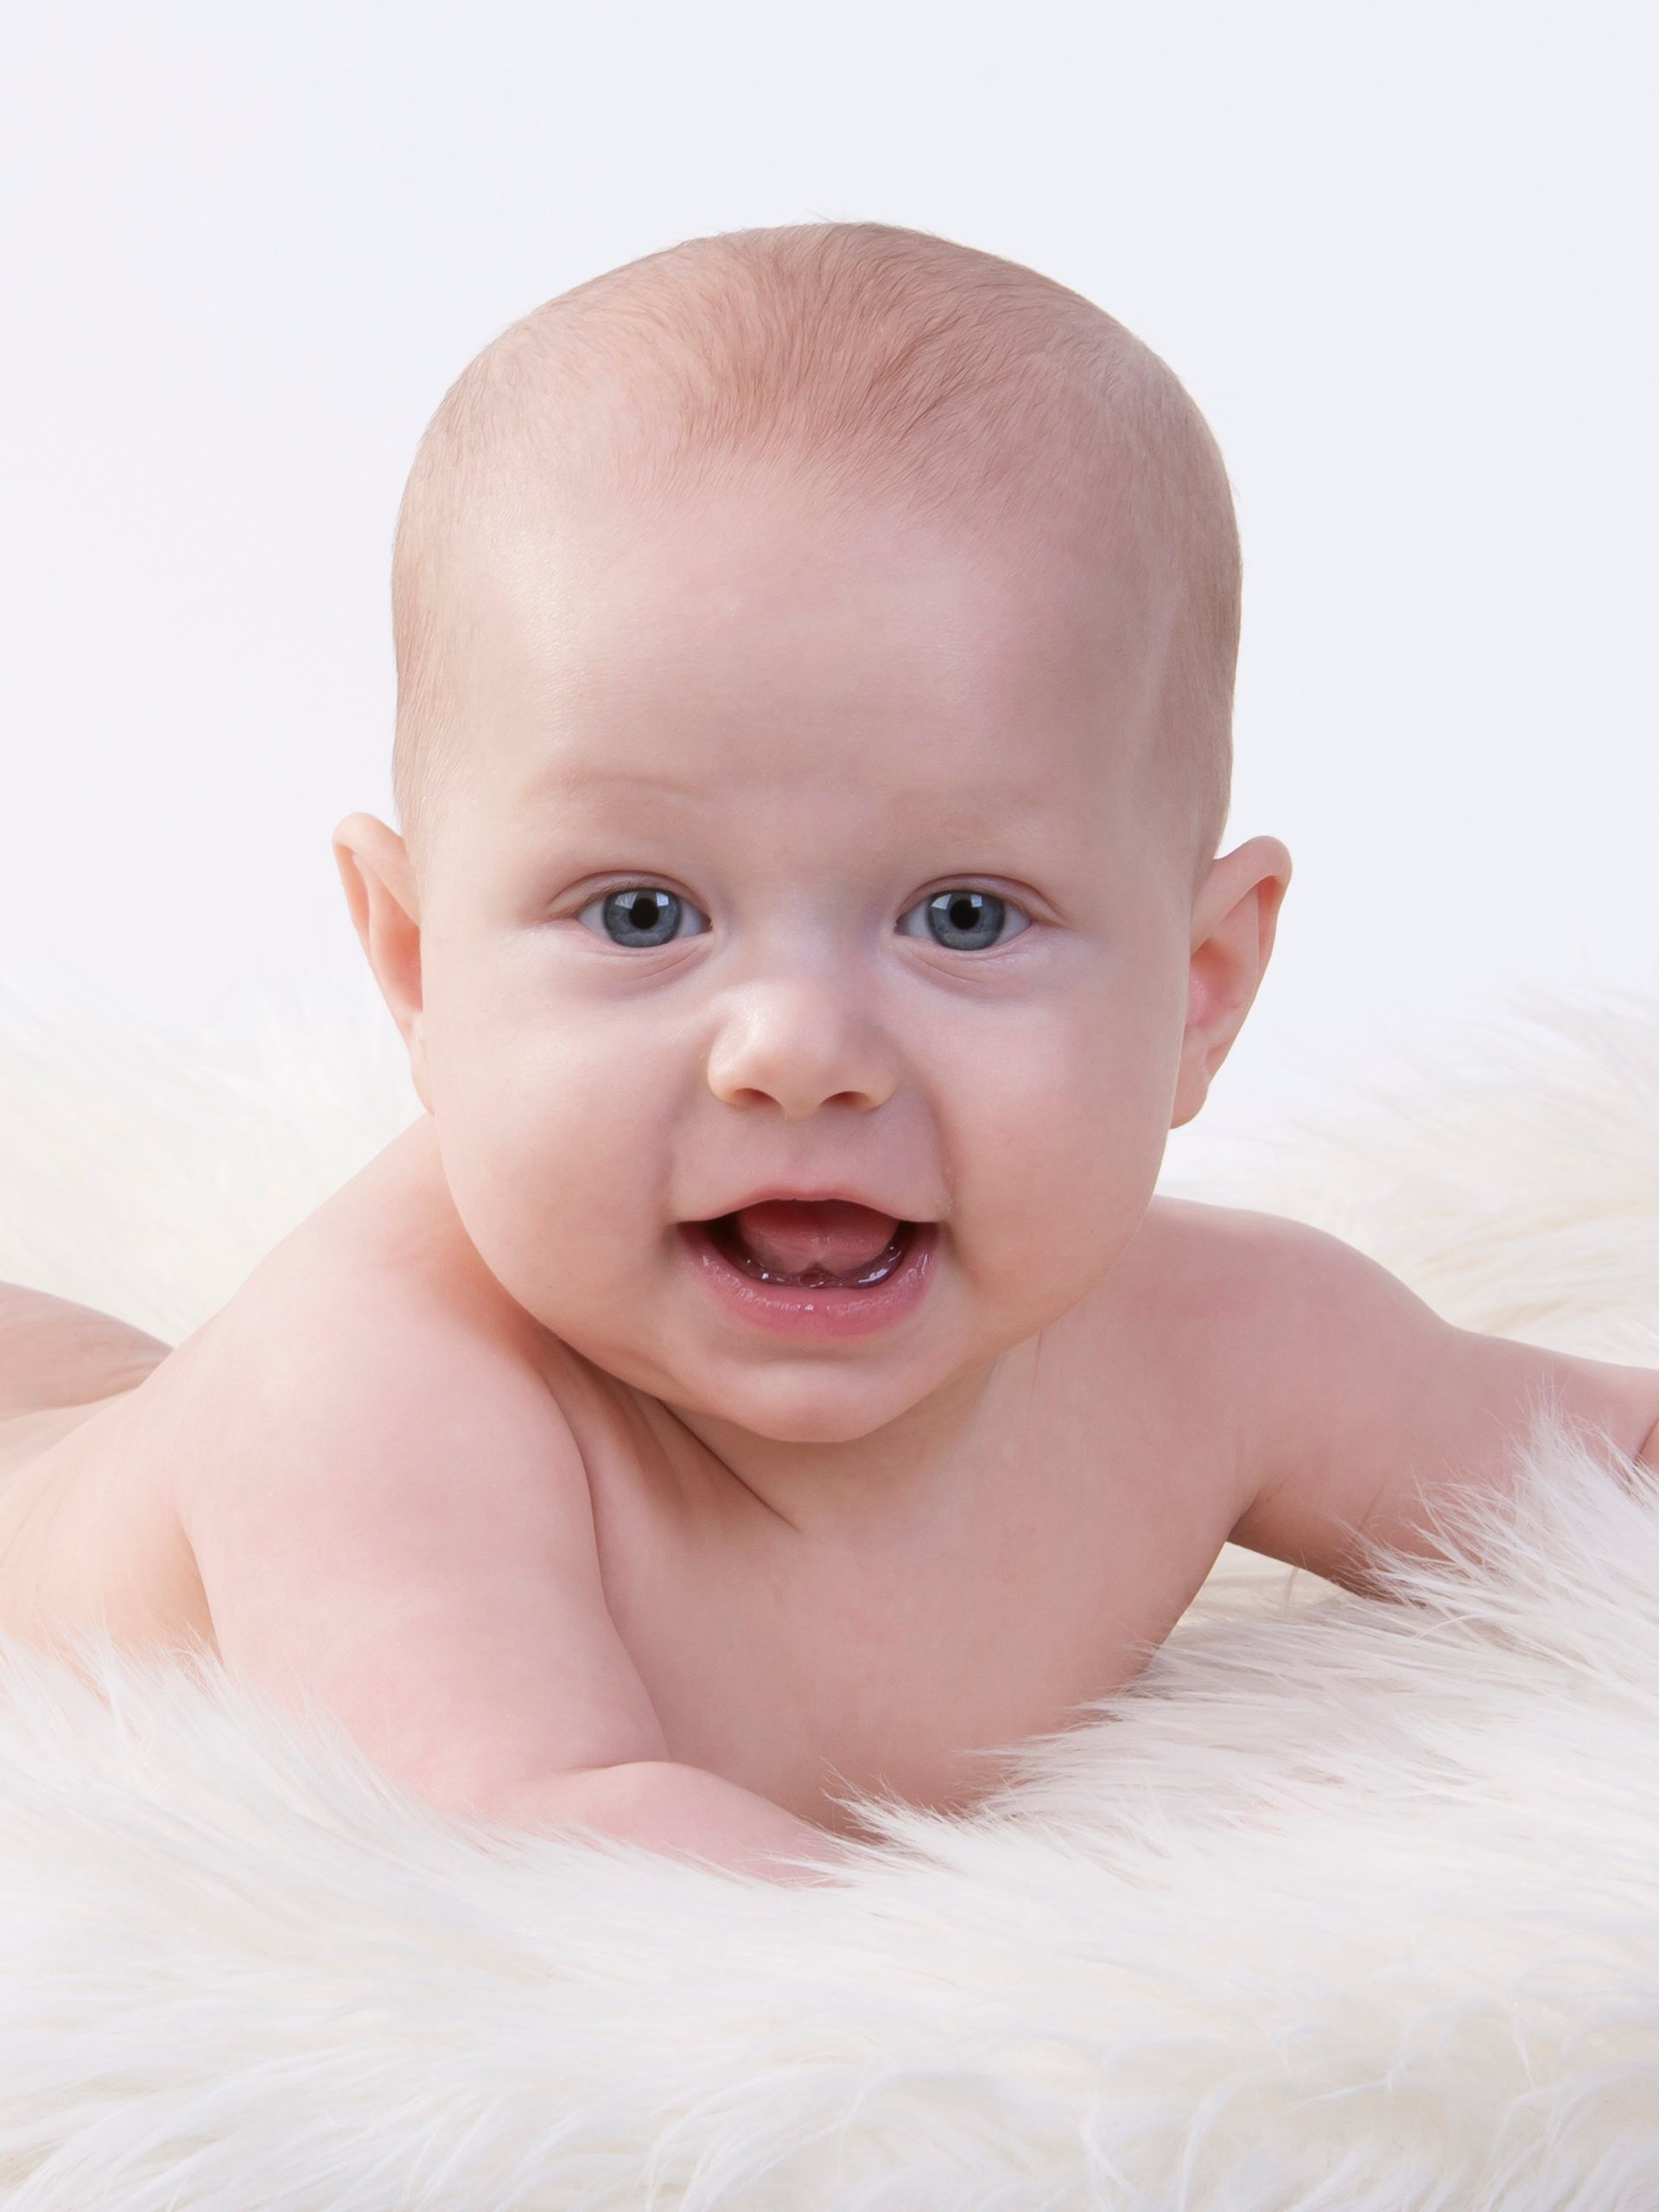 En baby som ligger på et saueskinn med hvit bakgrunn